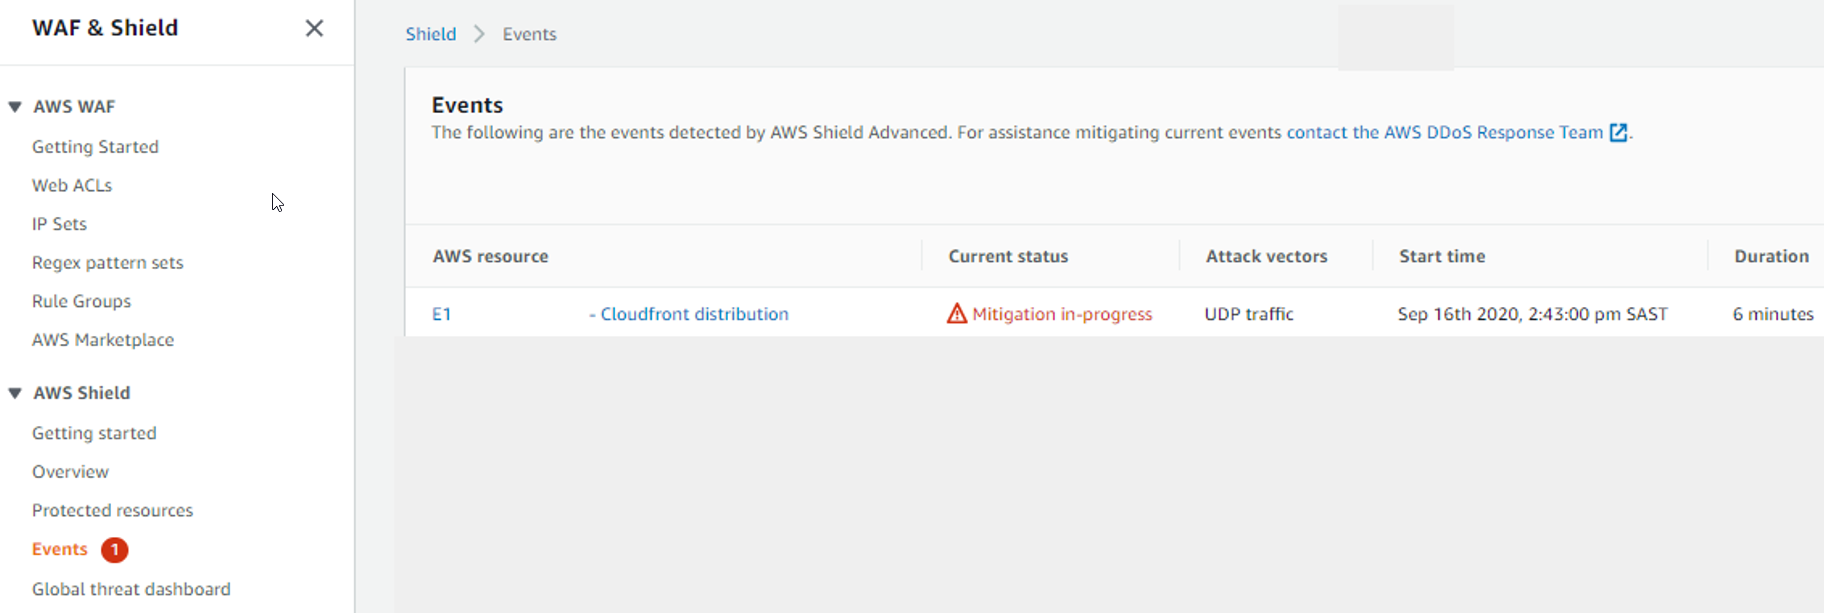 AWS Shield コンソールの左側のナビゲーションペインでは、Events セレクションが赤で強調表示され、その横には赤色の円の中に 1 という数字が表示されます。[Events] (イベント) ページが開き、イベントリストに 1 行が表示されます。この行には、 AWS CloudFront ディストリビューションタイプのリソースが一覧表示されます。[Current status] (現在のステータス) フィールドには、[Mitigation in progress] (緩和中) という語句の横に赤い三角形のアイコンが含まれています。[Attack vectors status] (攻撃ベクトルのステータス) フィールドには、[UDP traffic] (UDP トラフィック) が含まれています。[Start time] (開始時刻) フィールドには、「Sep 16th 2020, 2:43:00 pm SAST」と表示されています。[Duration] (期間) フィールドには「6 minutes」と表示されています。